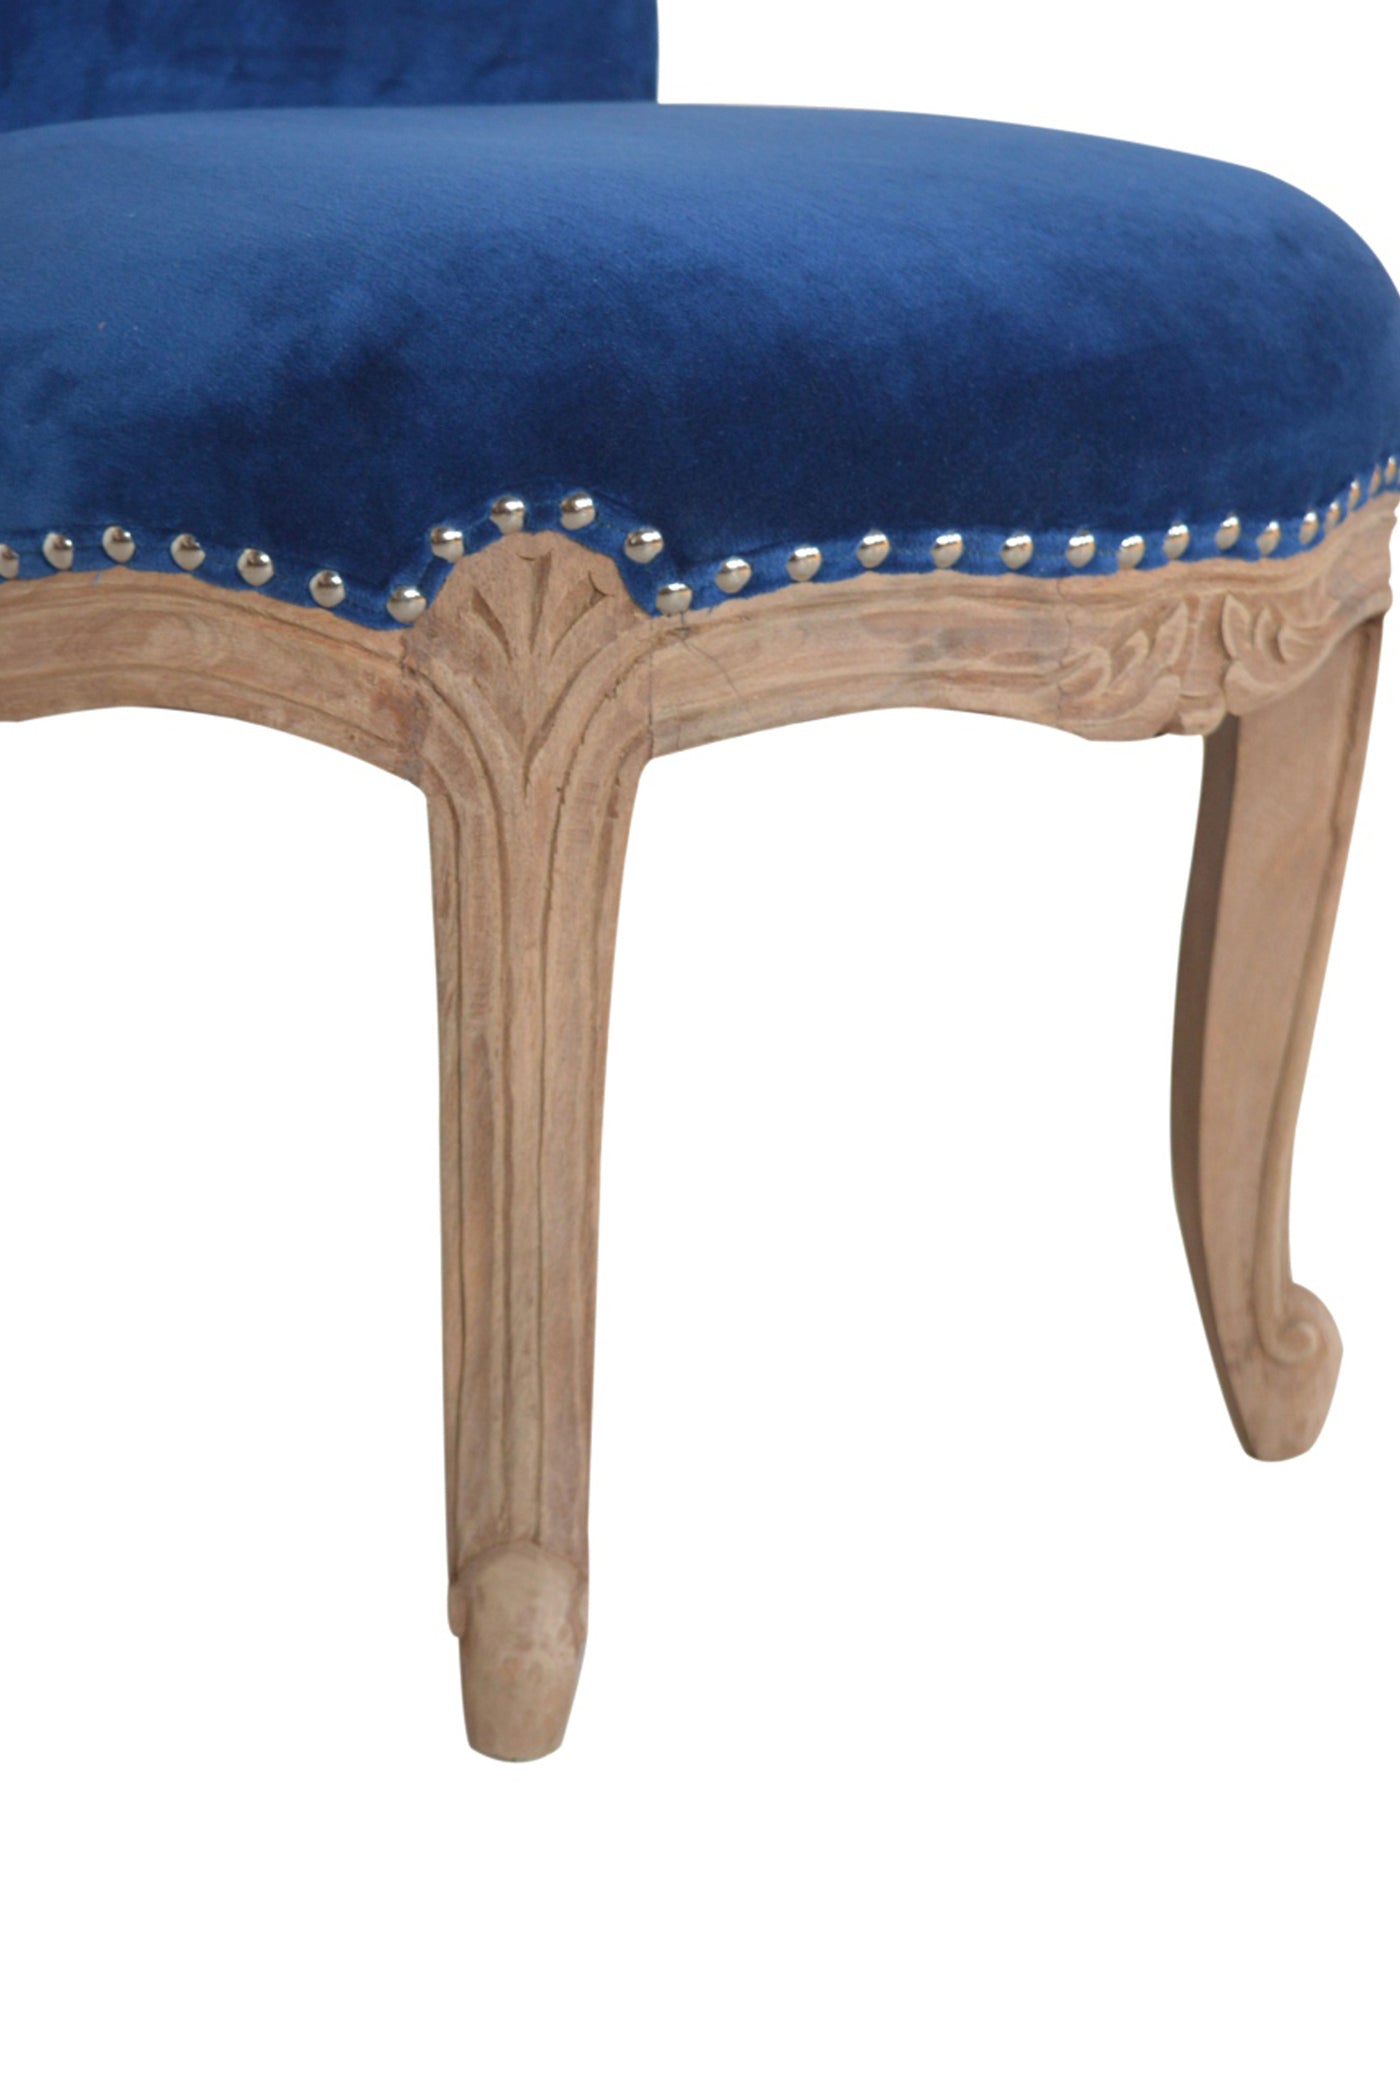 Versailles - Chair Studded Blue